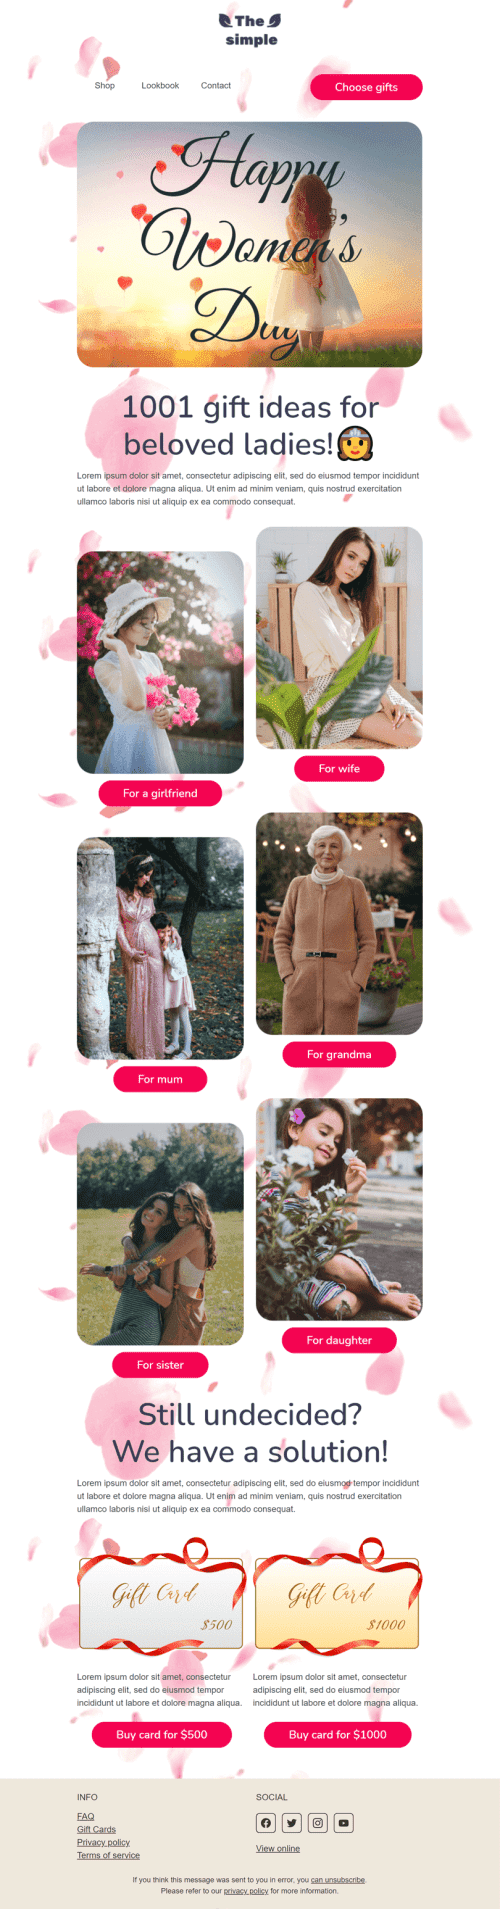 Шаблон письма к празднику Женский день «1001 идея подарка любимым дамам» для индустрии «Мода» мобильный вид